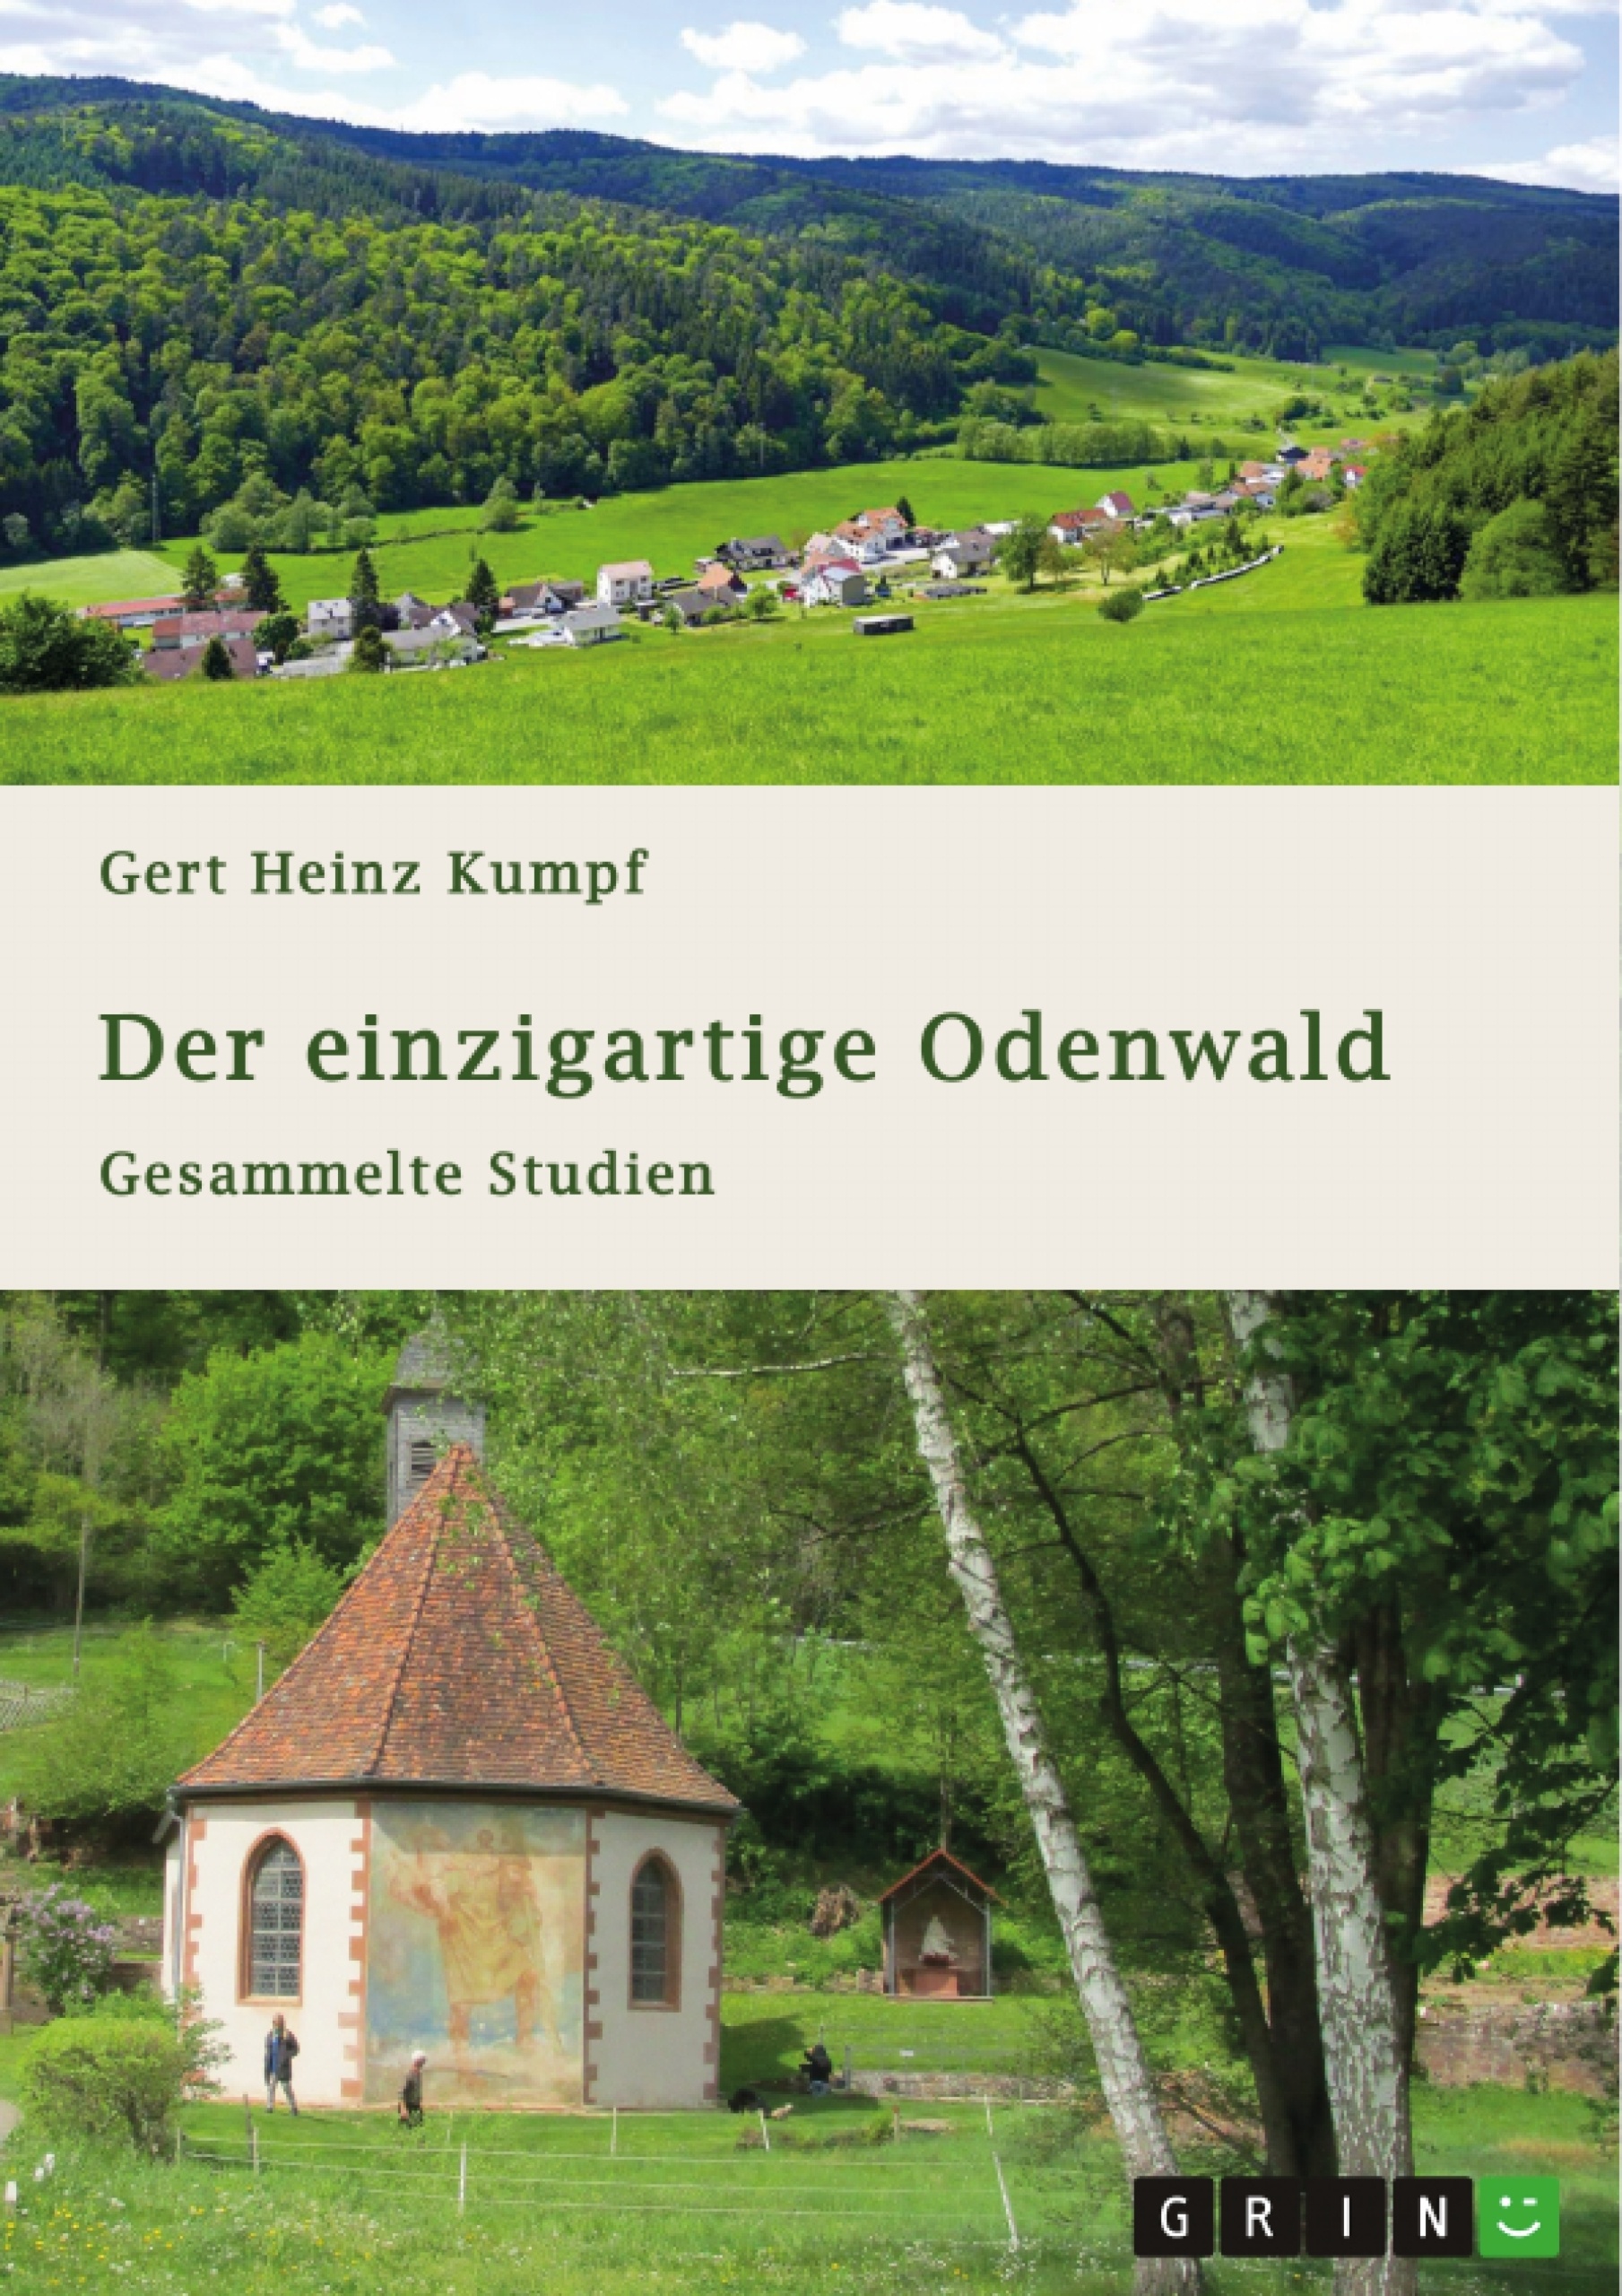 Title: Der einzigartige Odenwald. Gesammelte Studien